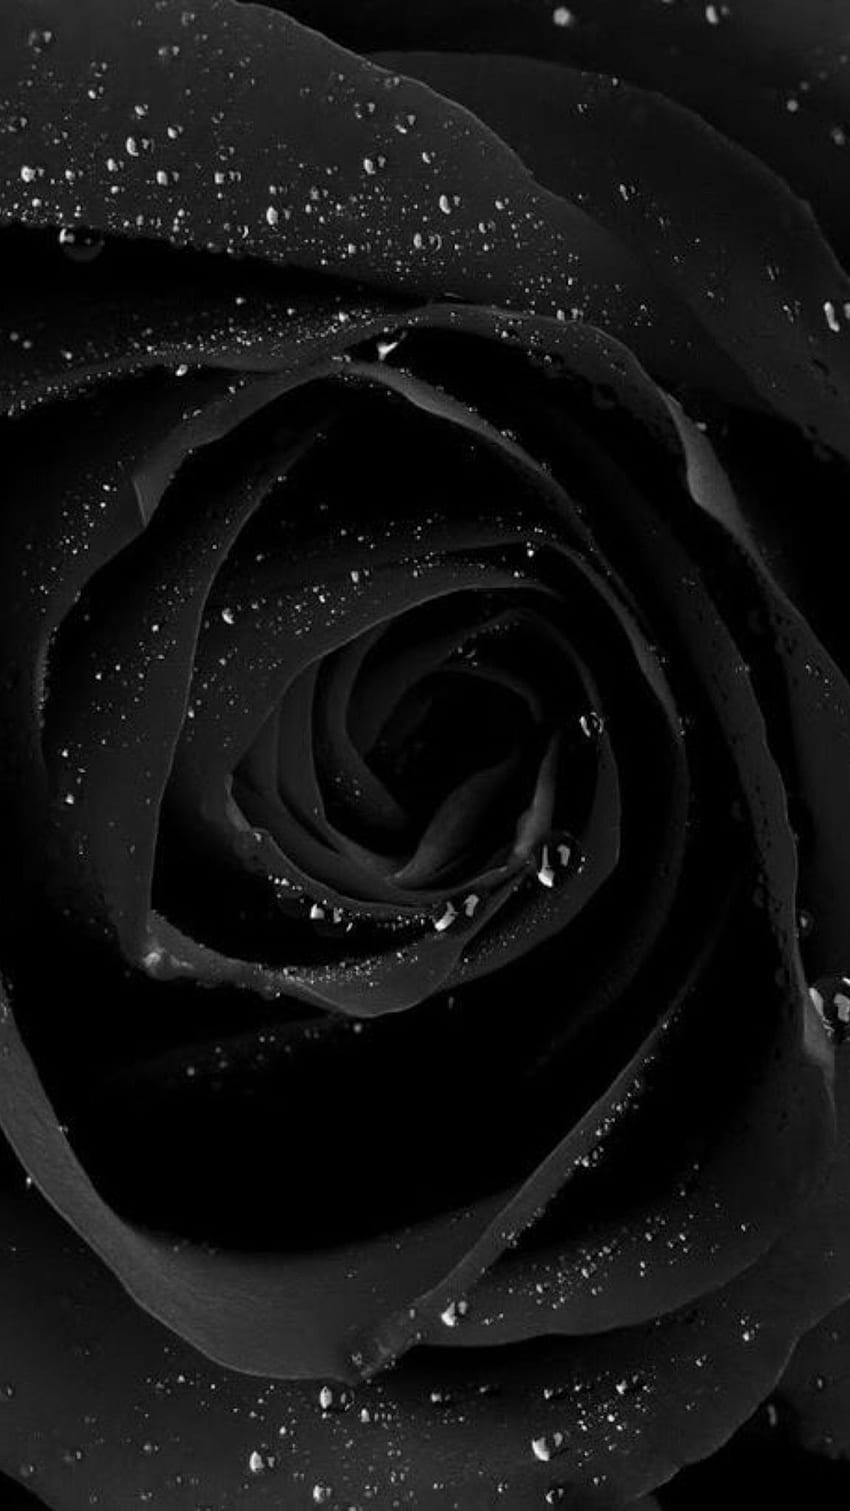 Schwarze Farbe, schwarze Farbe Rose, schwarze Rose Blume, schwarze Farbe Rose Blume HD-Handy-Hintergrundbild